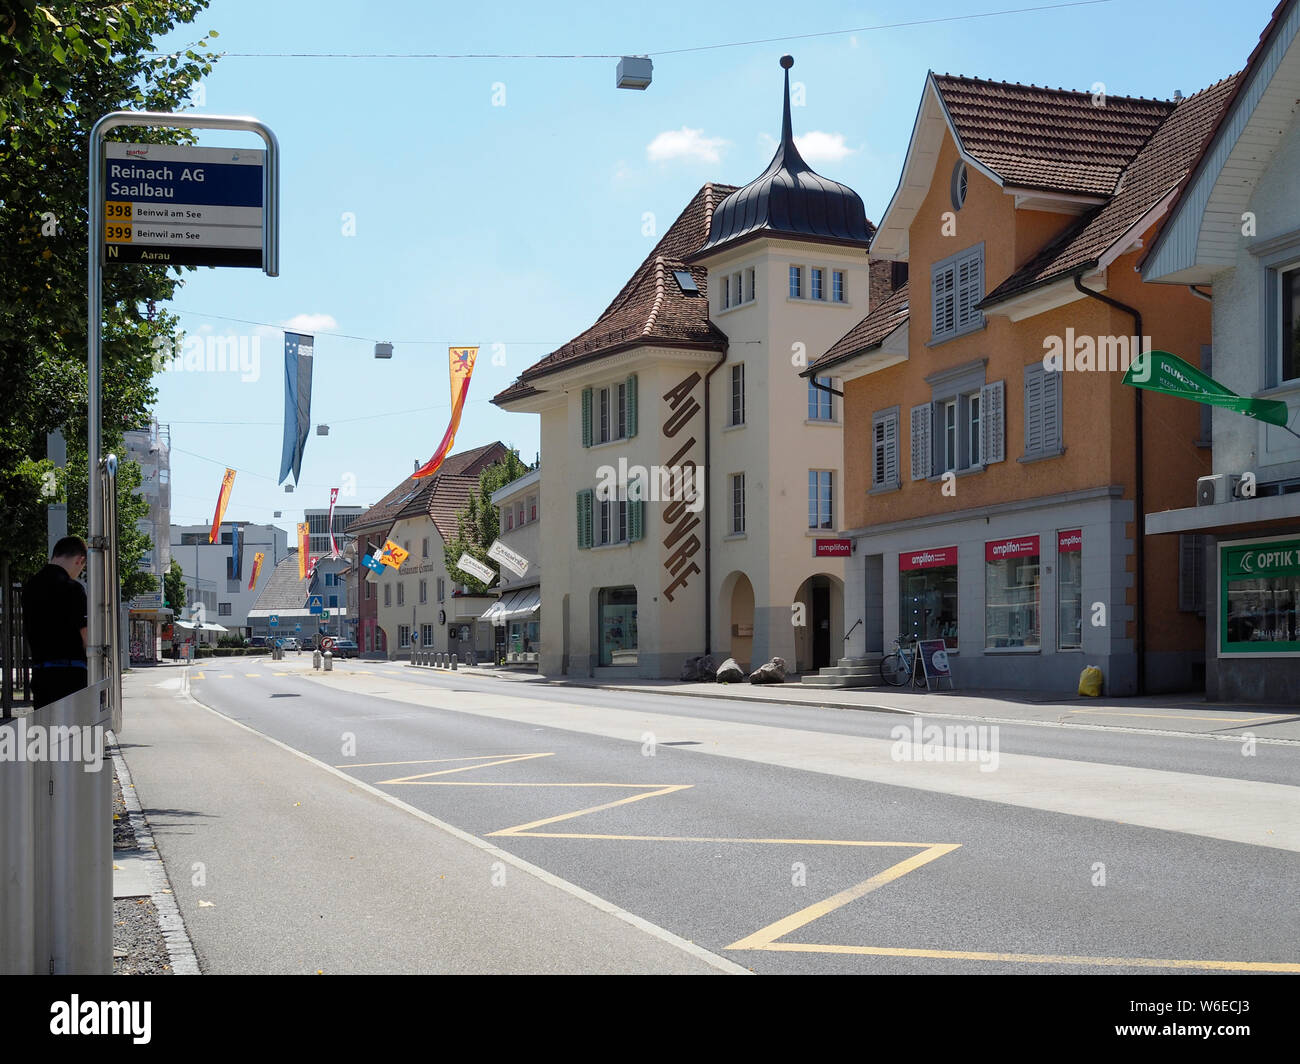 Bushaltestelle Saalbau auf der Hauptstrasse in Reinach AG, Schweiz, Europa Stock Photo